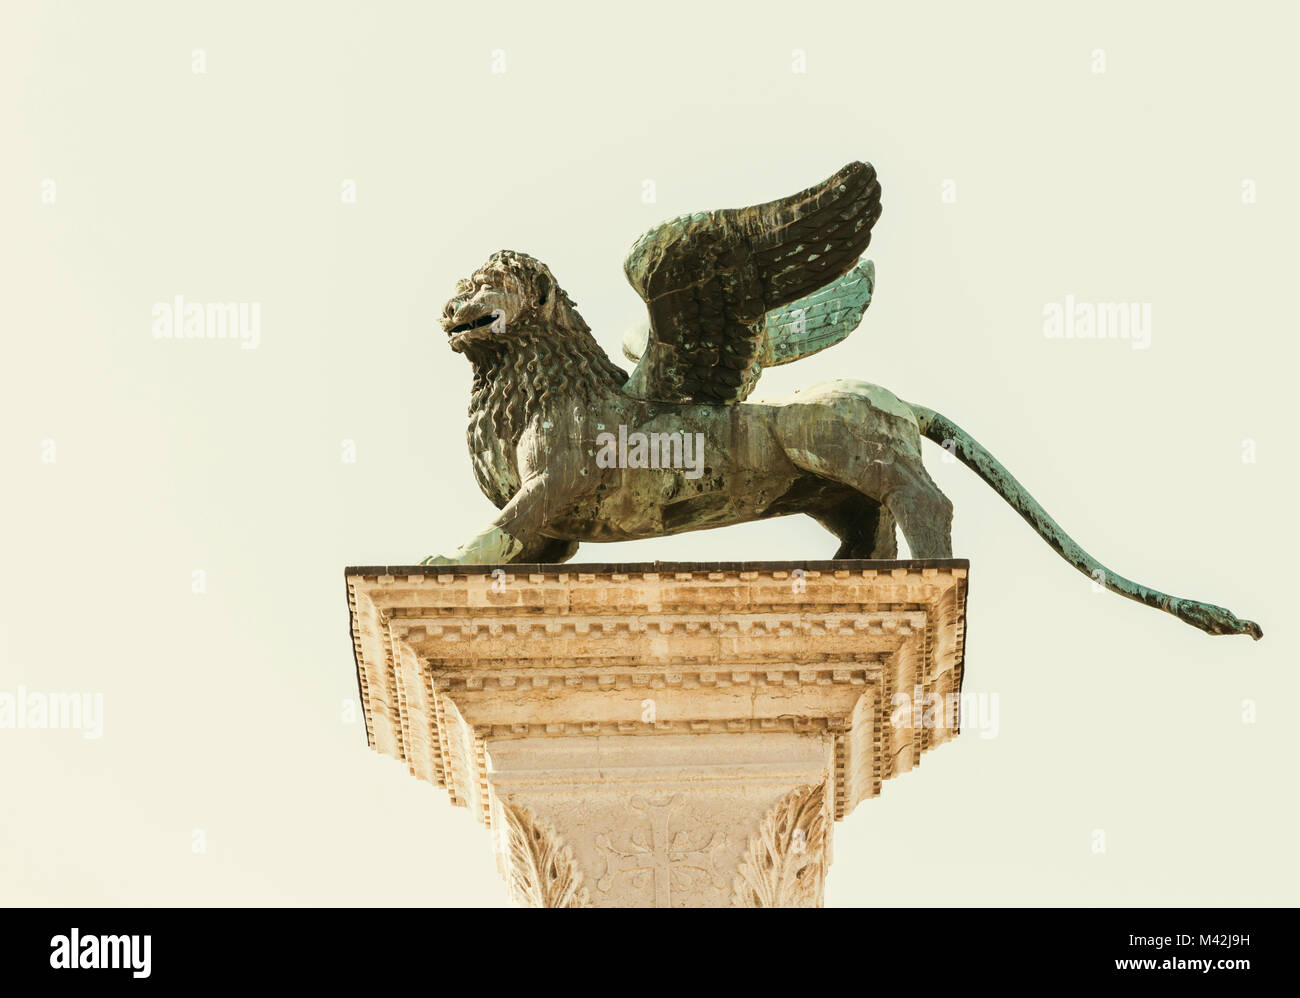 Venecia, Provincia de Venecia, Región de Véneto, Italia. El león alado de Venecia de bronce de pie en la cima de la columna de granito en la Piazzetta off Piazza San Marco Foto de stock